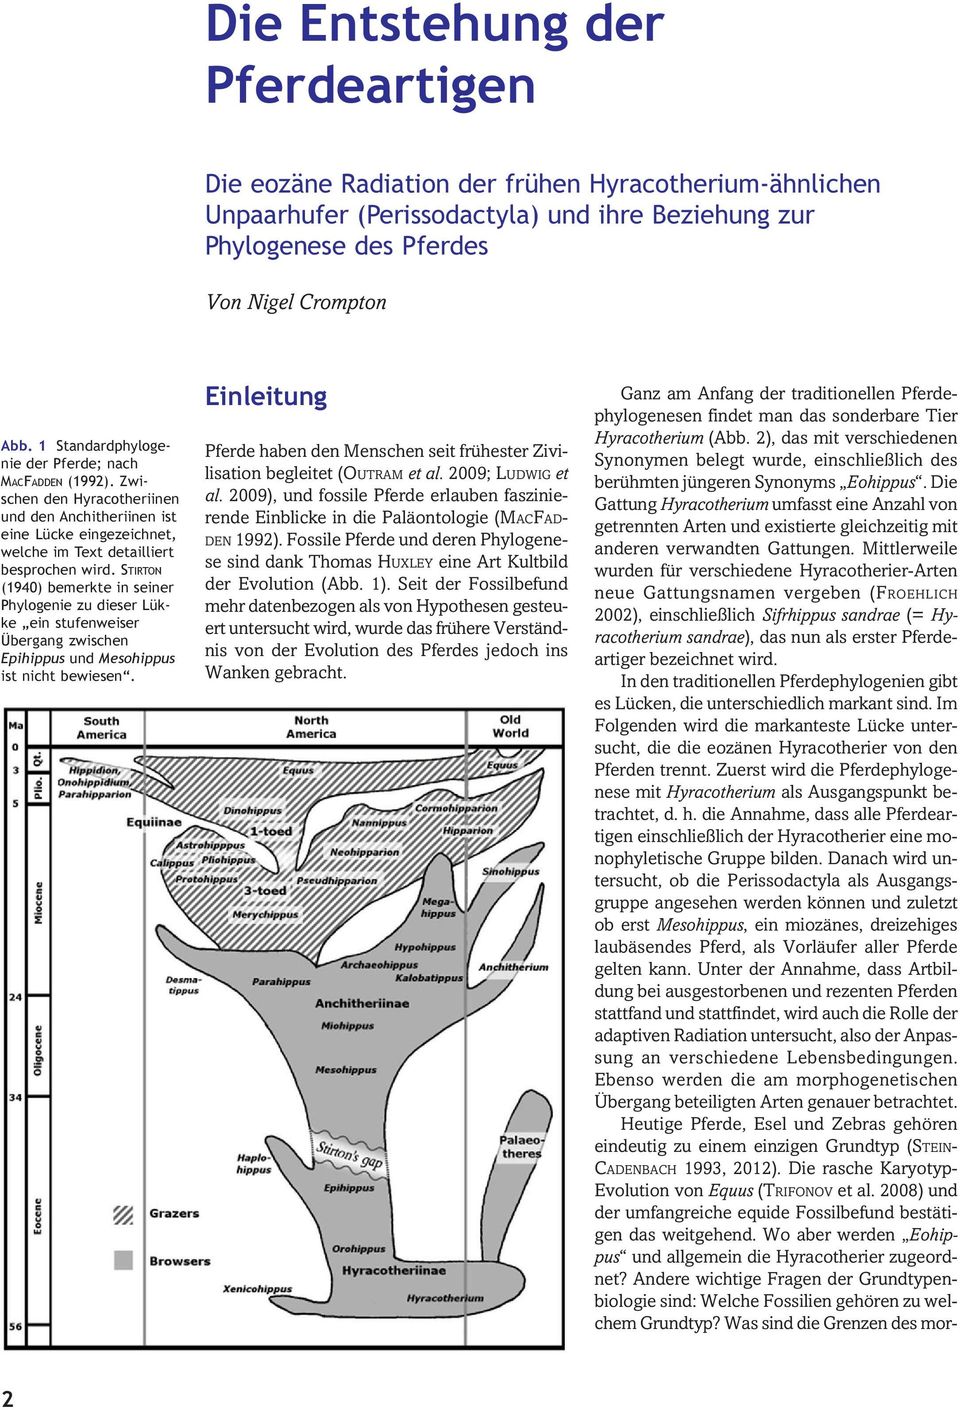 STIRTON (1940) bemerkte in seiner Phylogenie zu dieser Lükke ein stufenweiser Übergang zwischen Epihippus und Mesohippus ist nicht bewiesen.